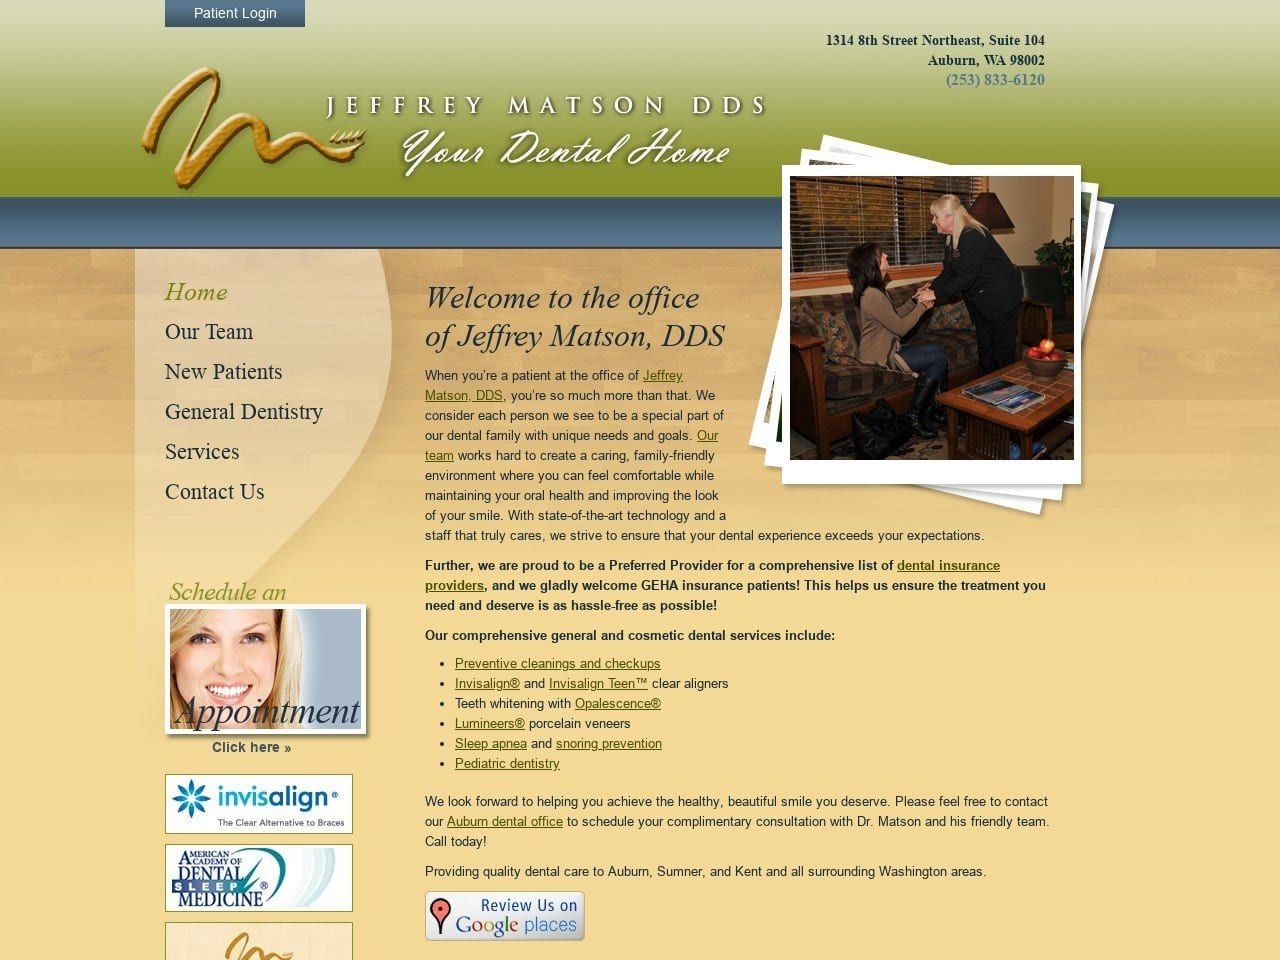 Jeffrey Matson DDS Website Screenshot from jeffmatsondds.com